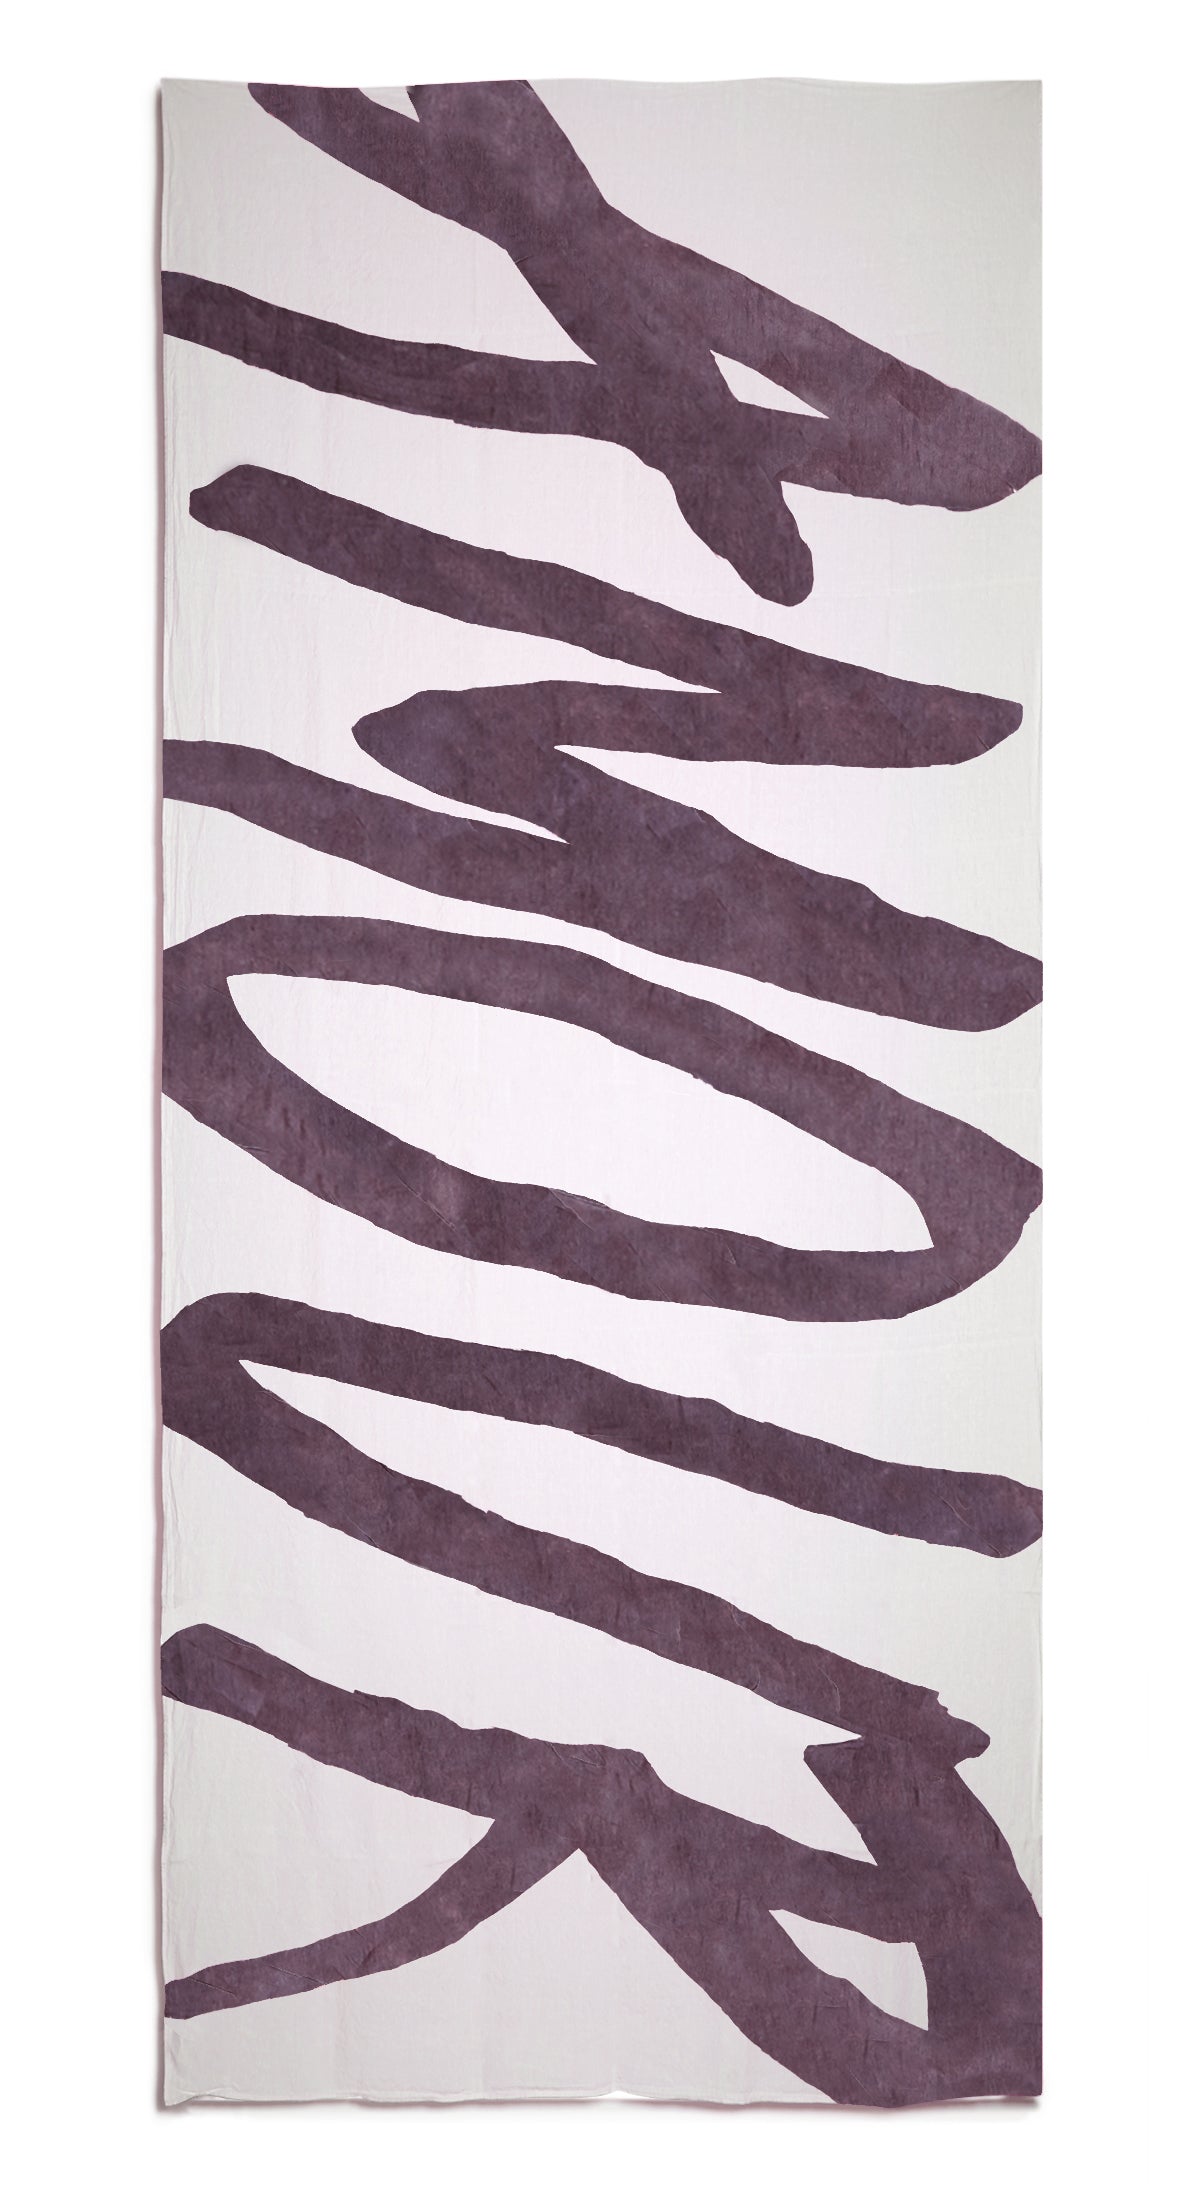 Bespoke Word Linen Tablecloth in Grape Purple